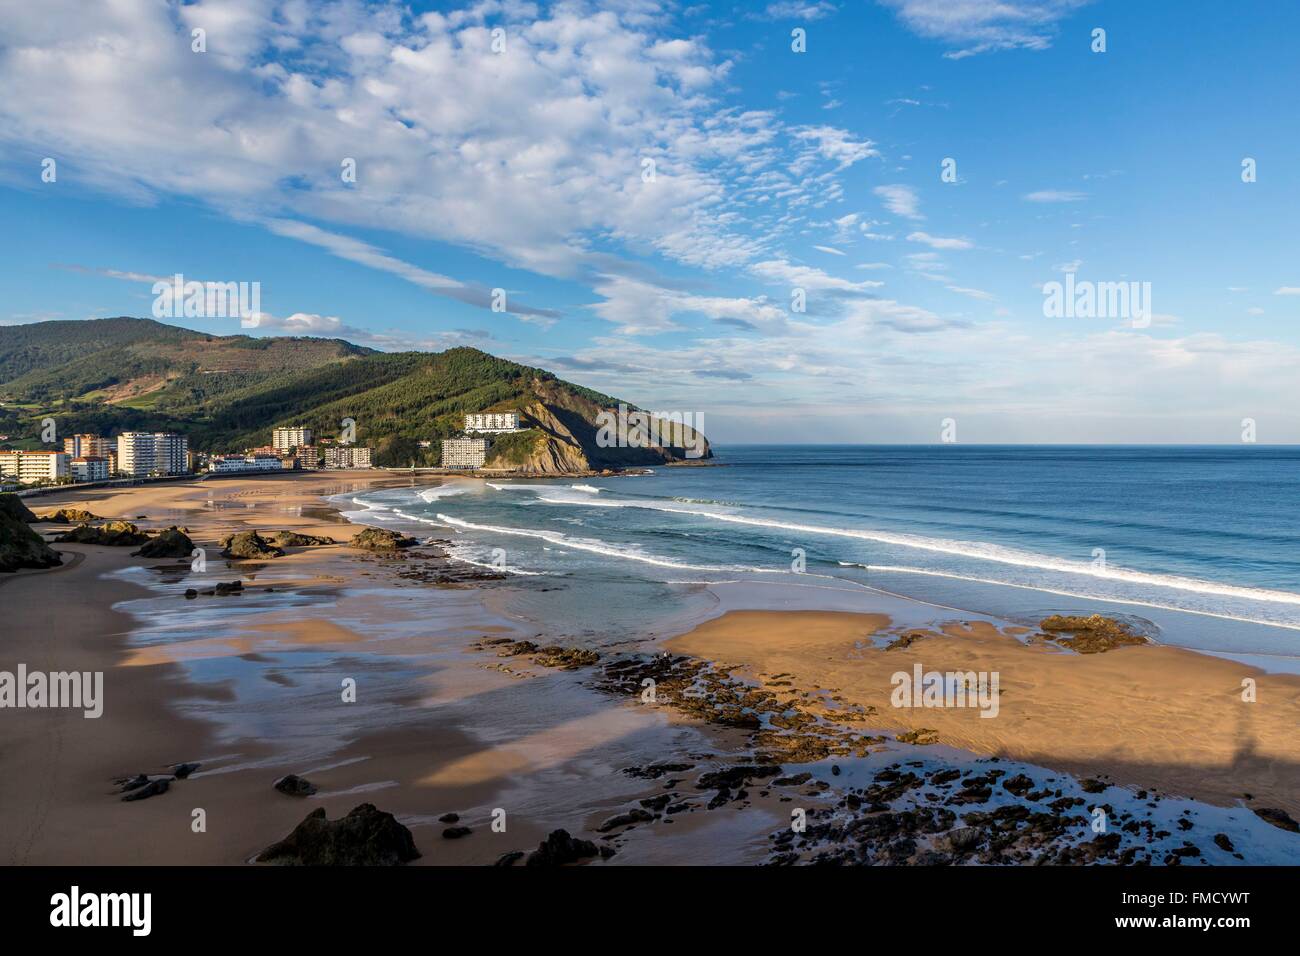 Spain, Basque Country, Bizkaia, Bakio, beach Stock Photo